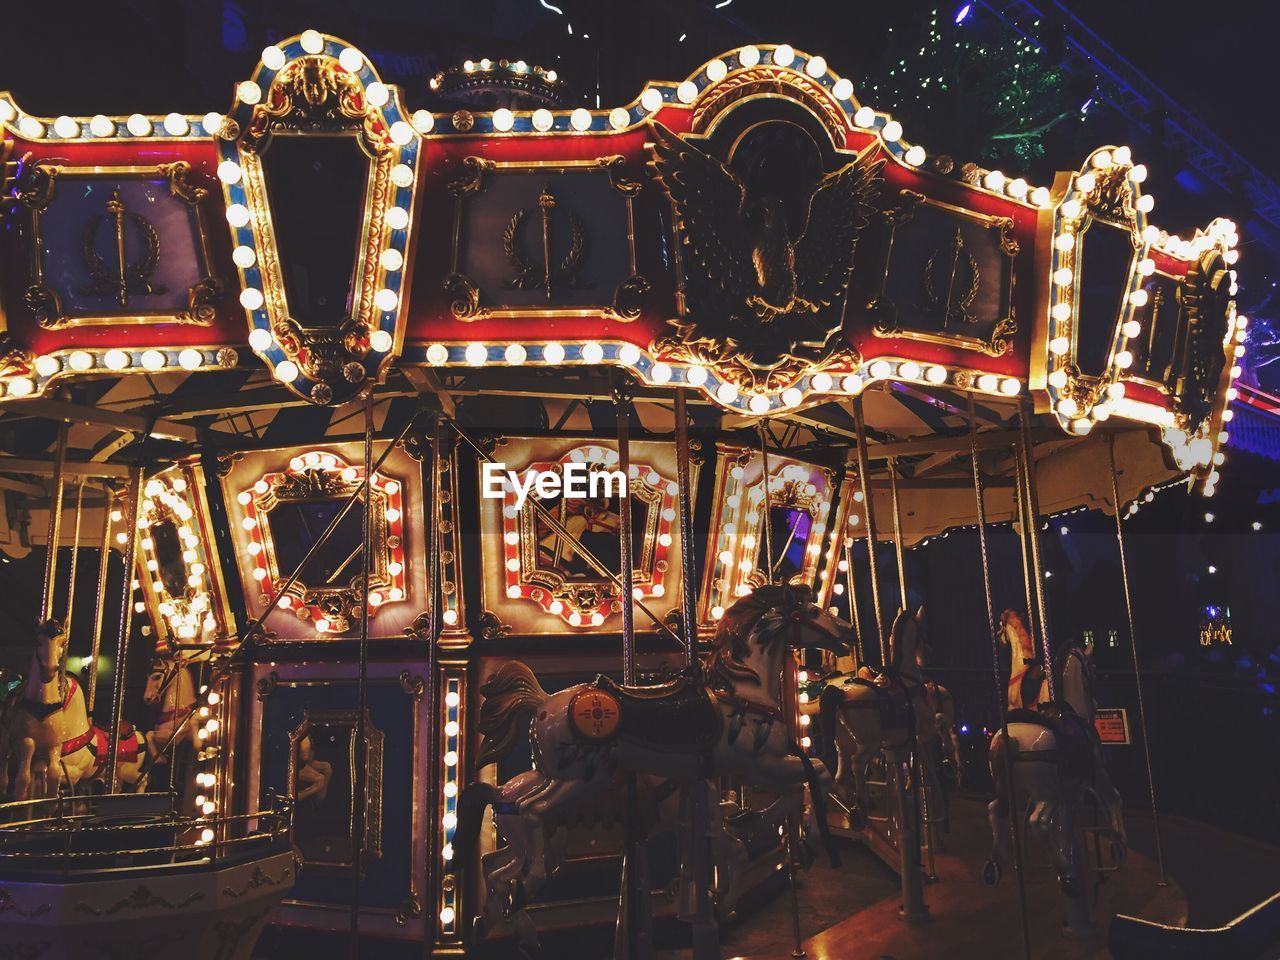 Illuminated carousel at night